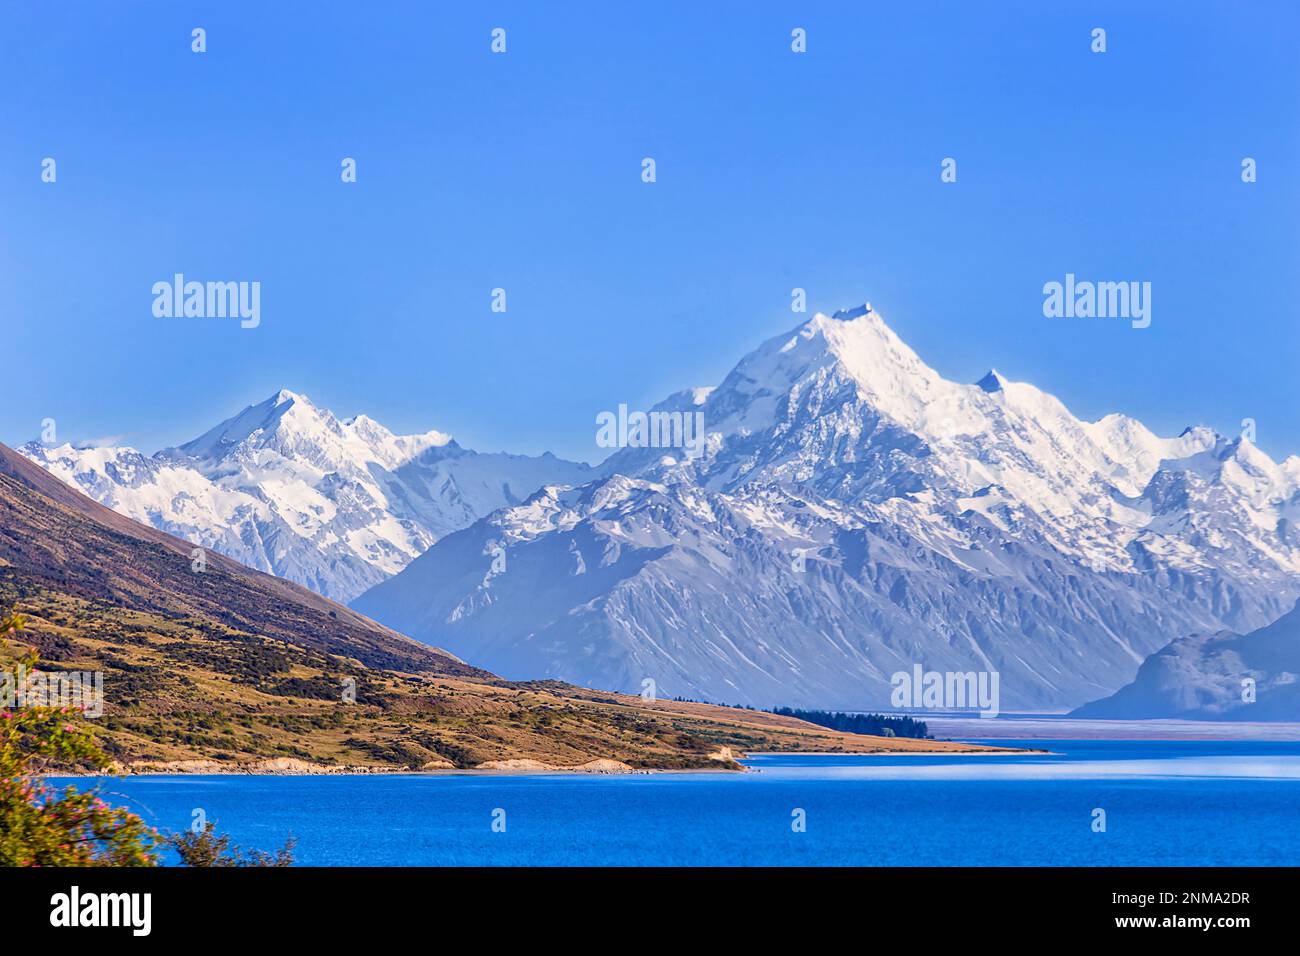 Neuseeland Pukaki See und Aoraki Mt Cook Berggipfel auf der Südinsel - beliebtes Touristenziel. Stockfoto